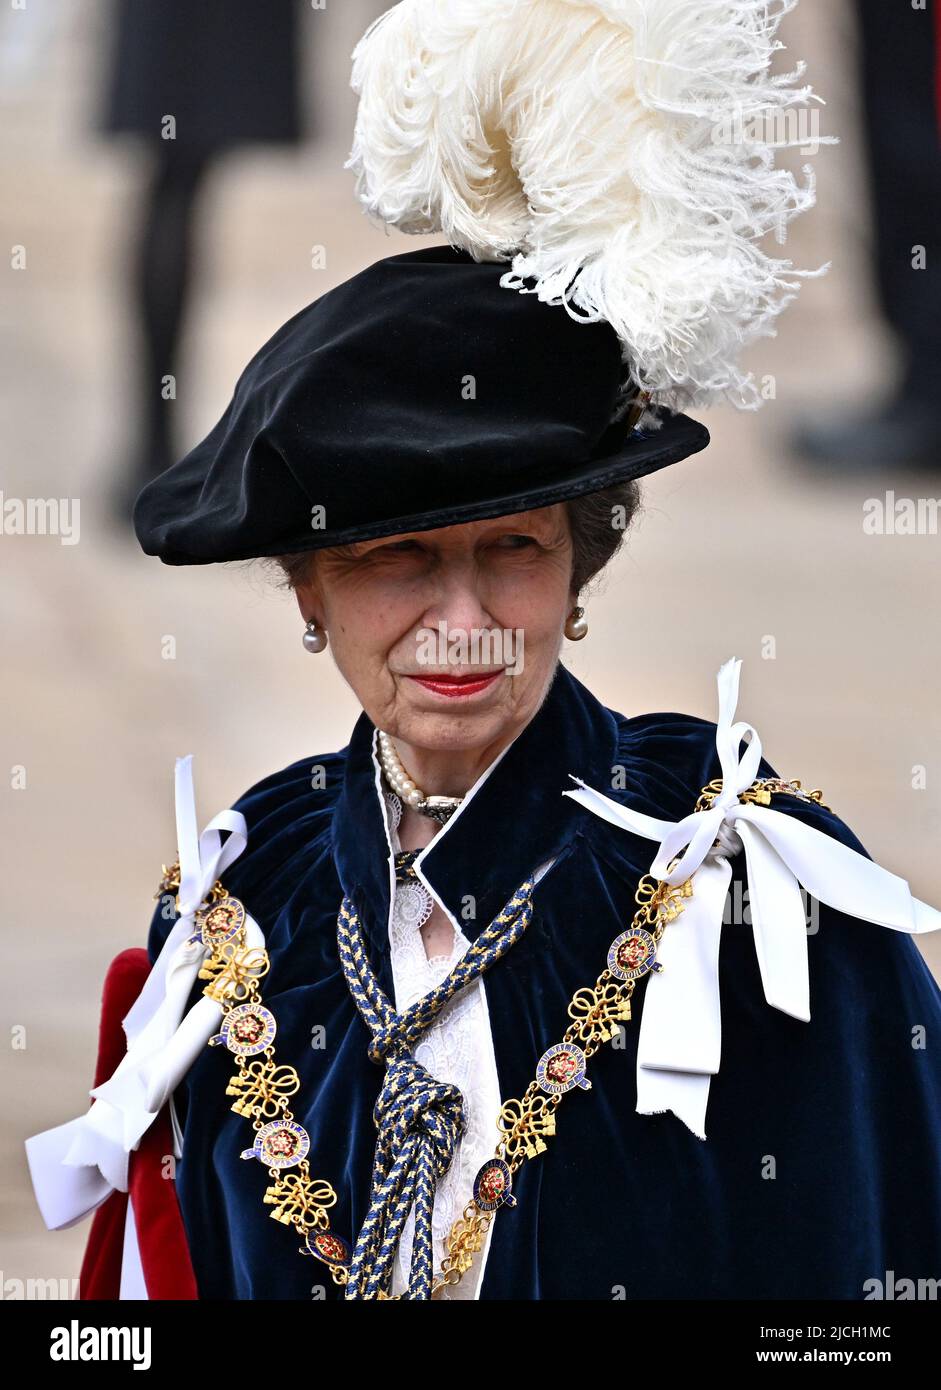 Prinzessin Royal kommt zum jährlichen Orden des Gewanters in der St. George's Chapel, Windsor Castle. Bilddatum: Montag, 13. Juni 2022. Stockfoto